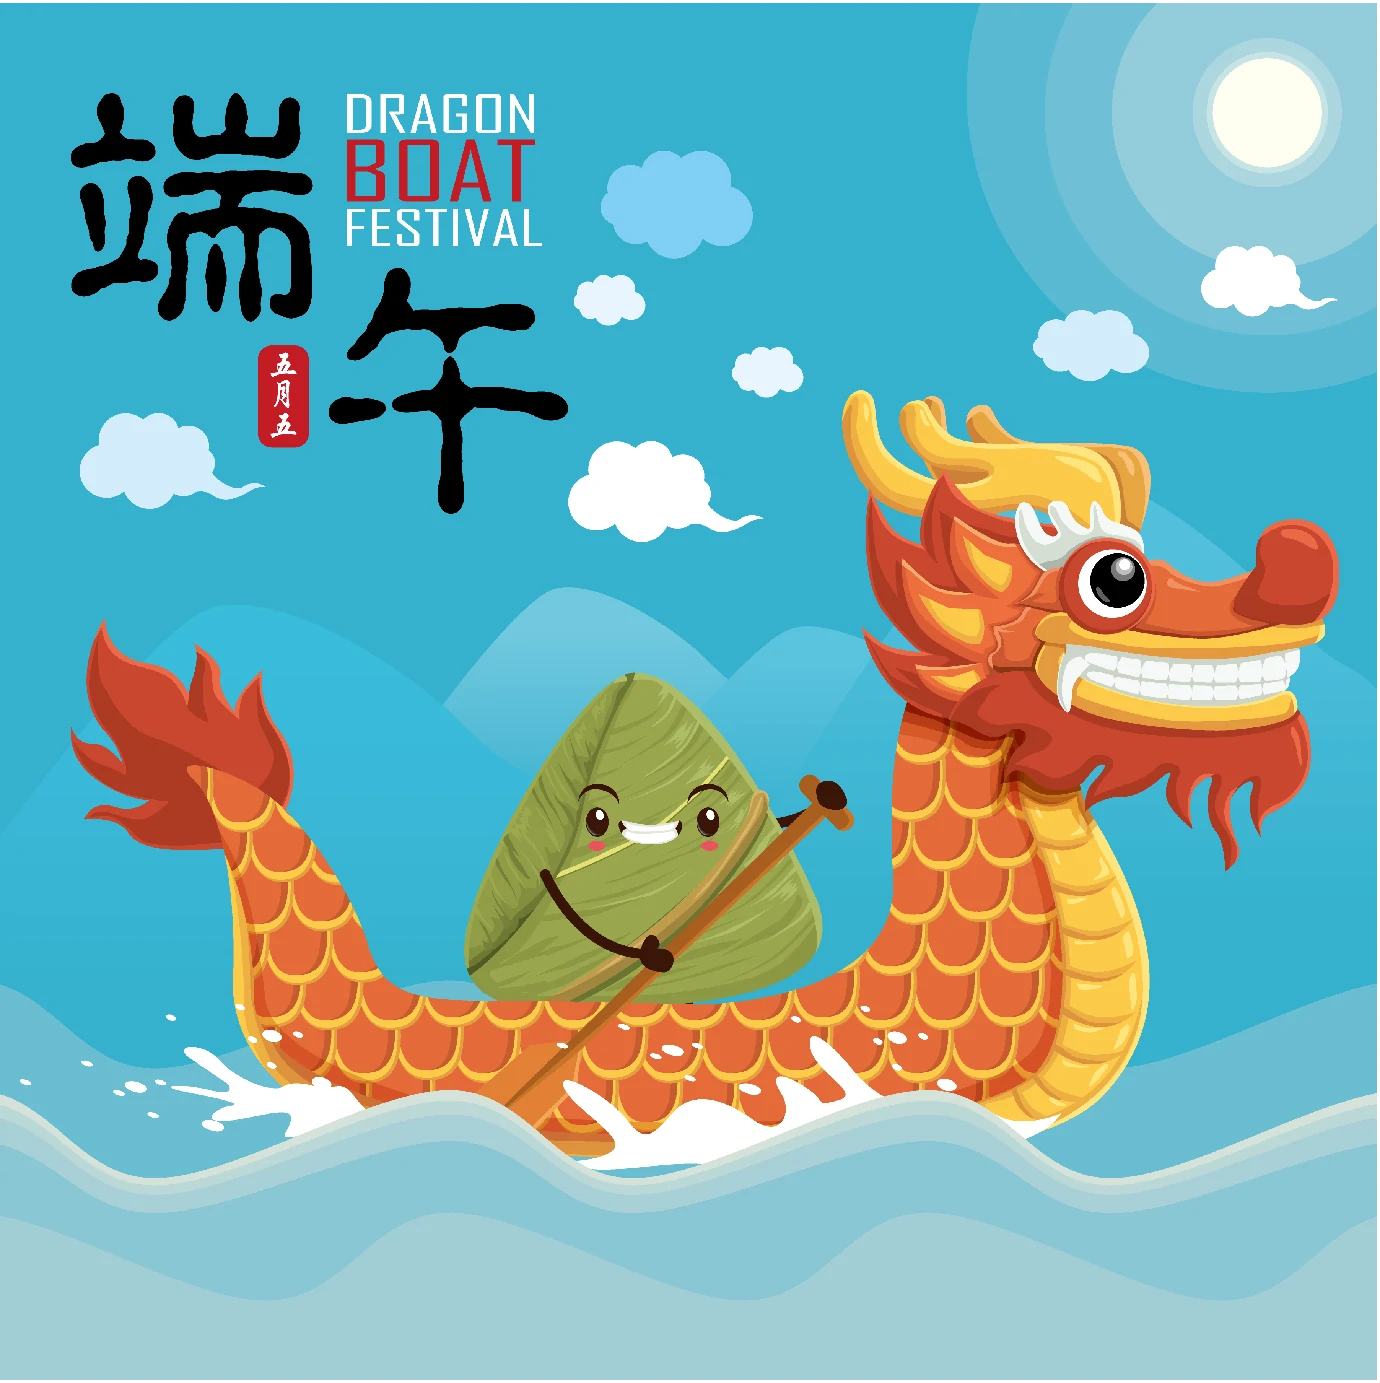 中国传统节日卡通手绘端午节赛龙舟粽子插画海报AI矢量设计素材【008】